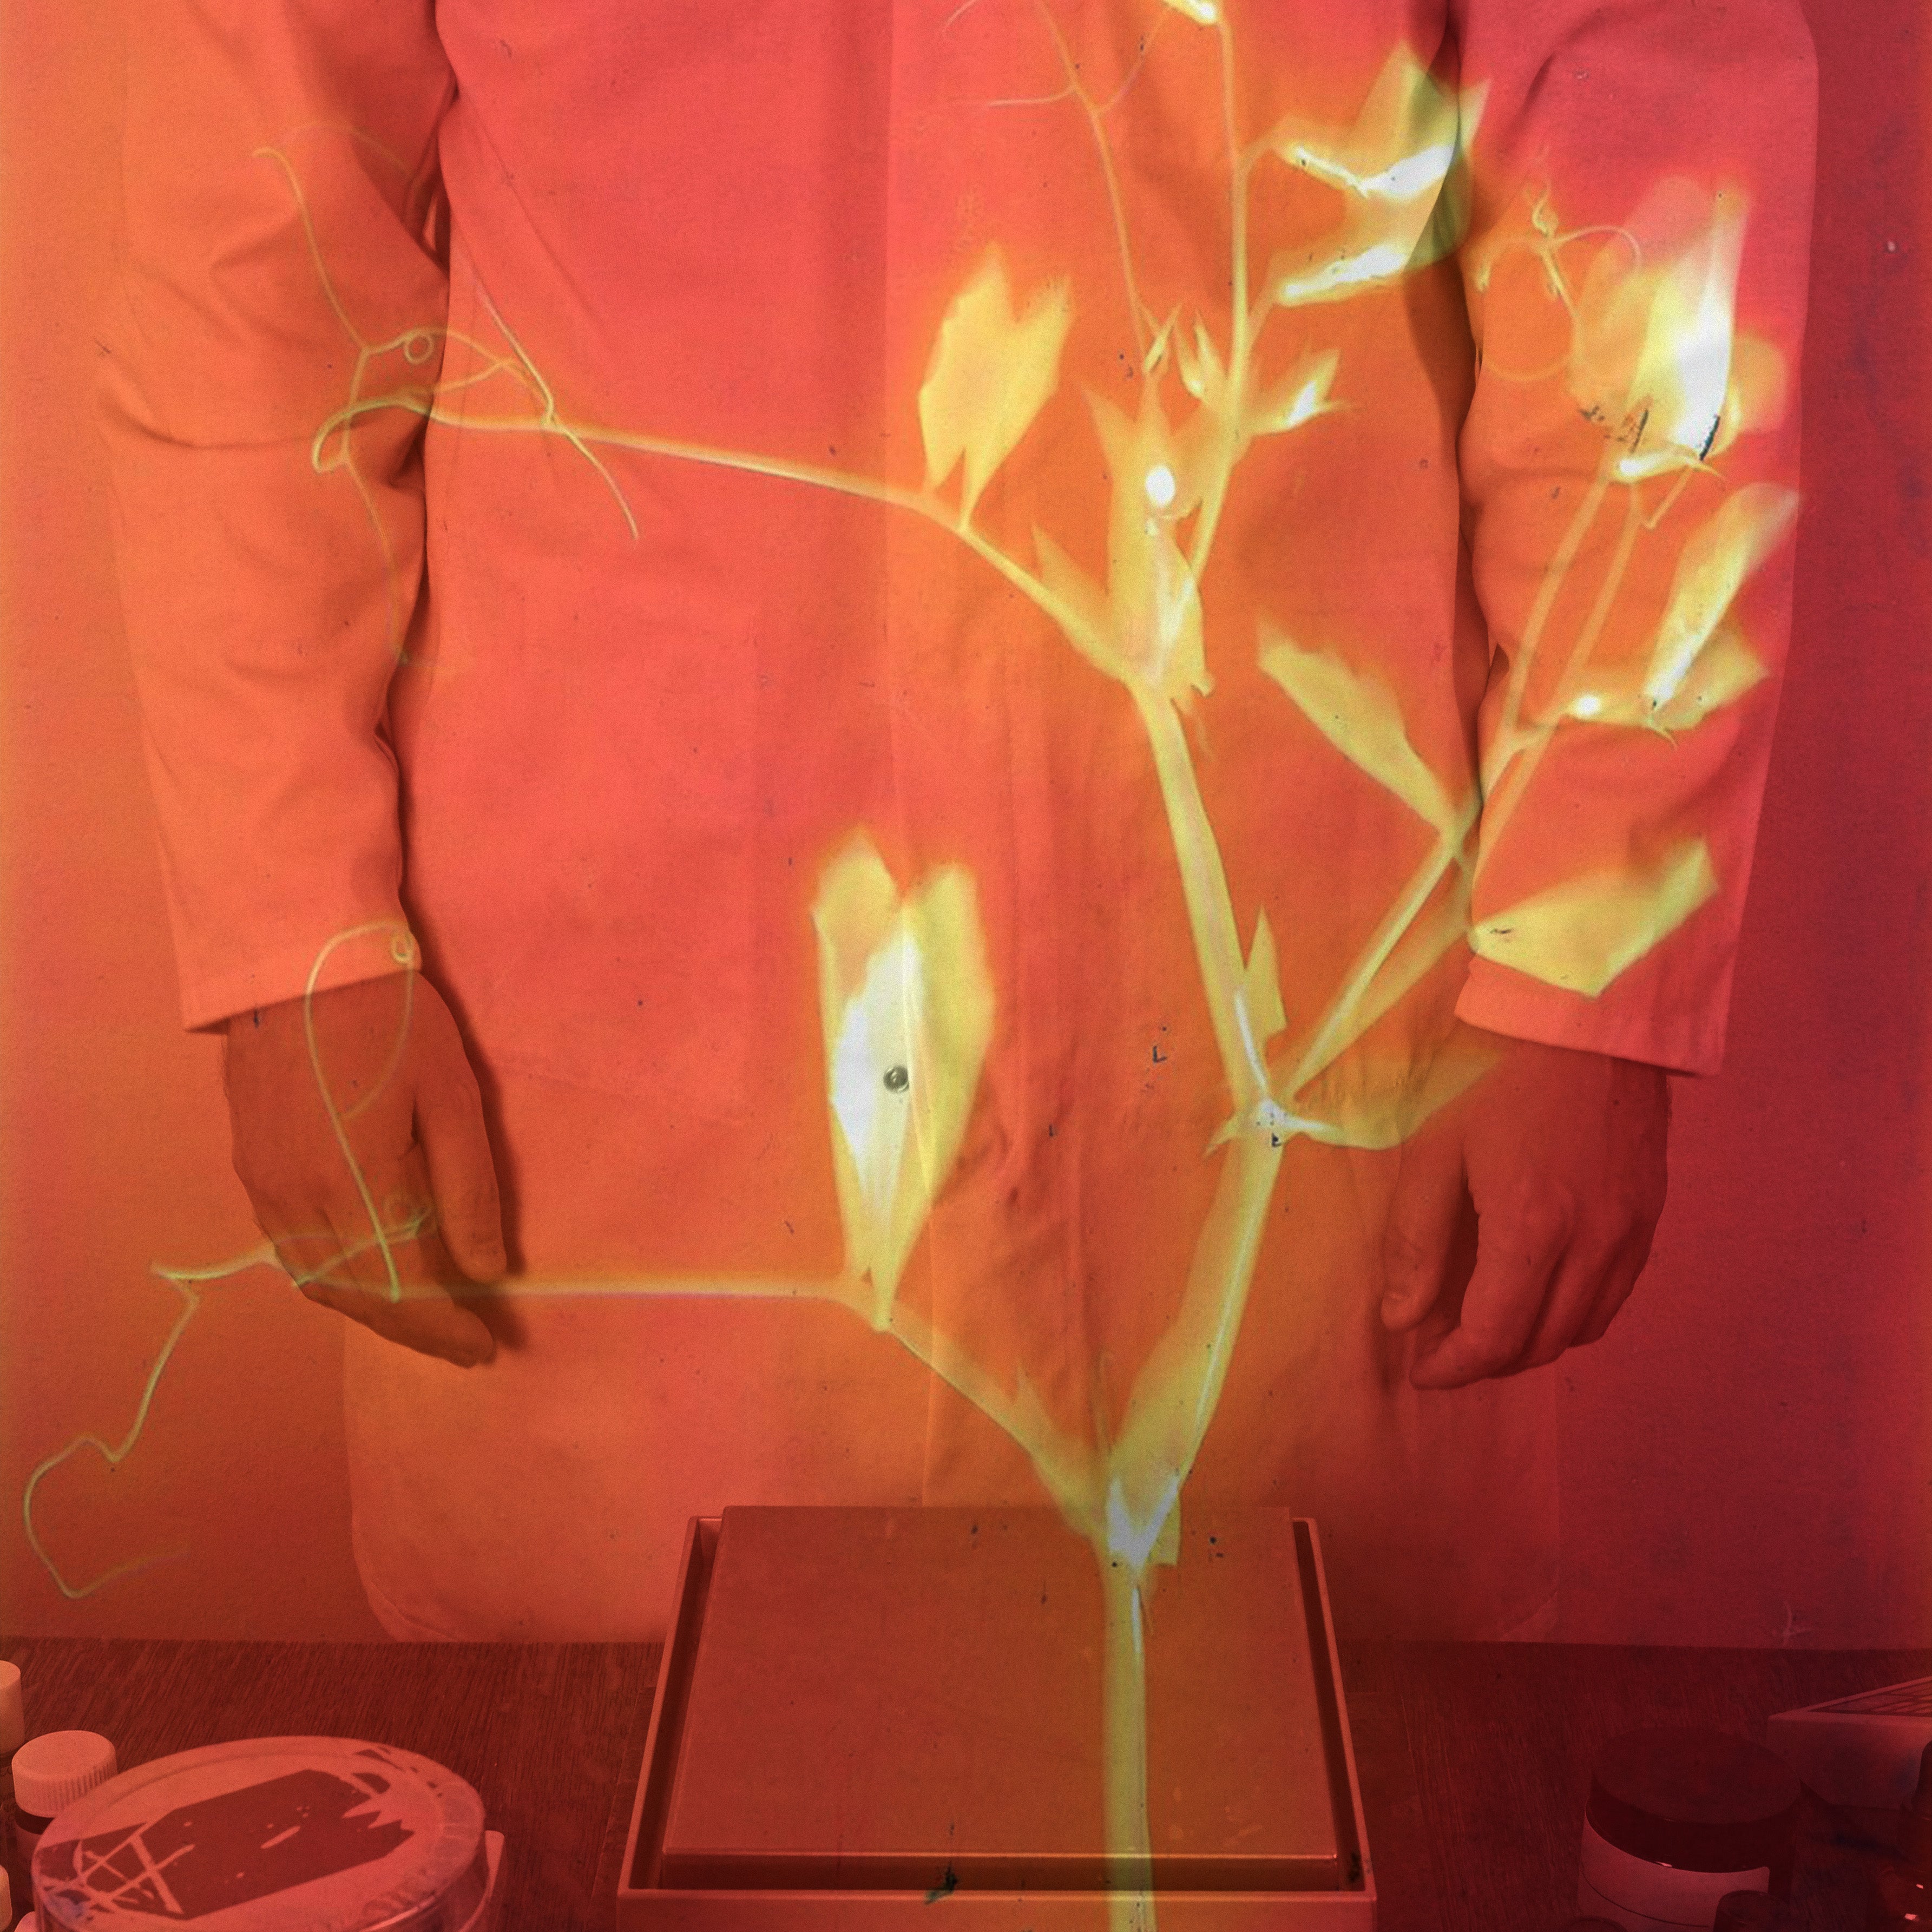 Perfumer in white lab coat image overlaid with orange botanical lumen print